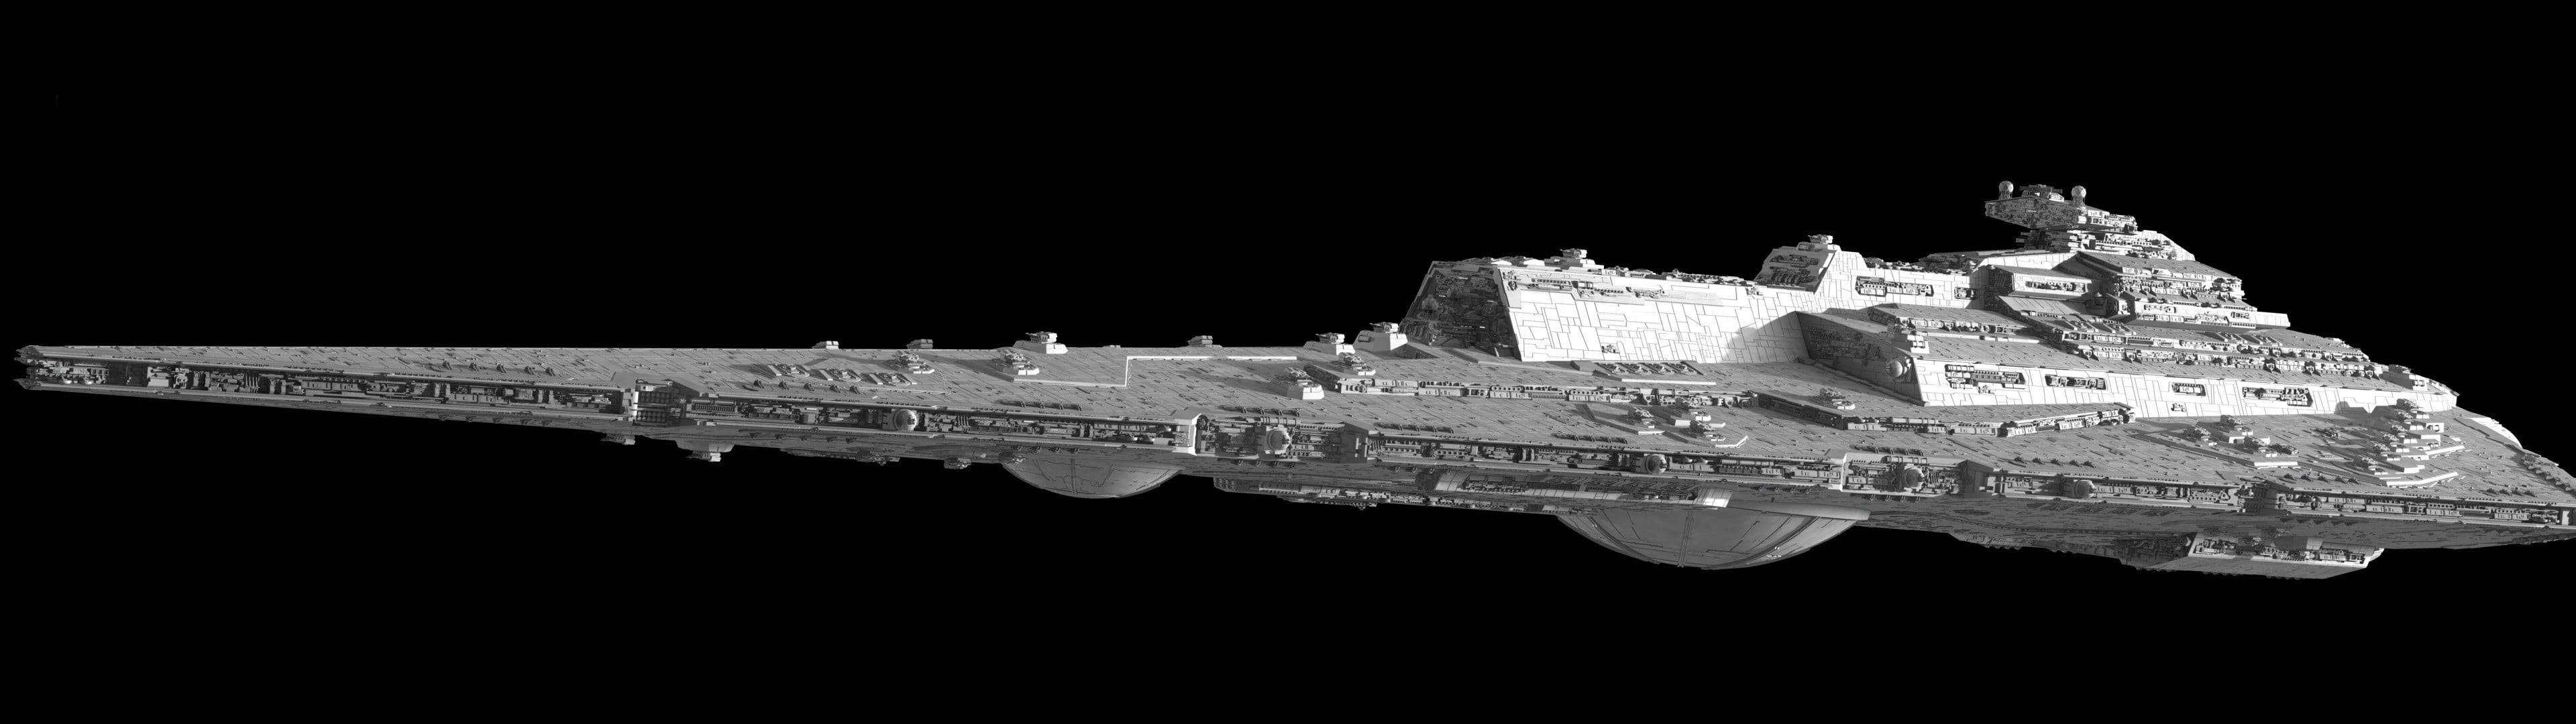 4k Ultra Hd Dark Spaceship Background